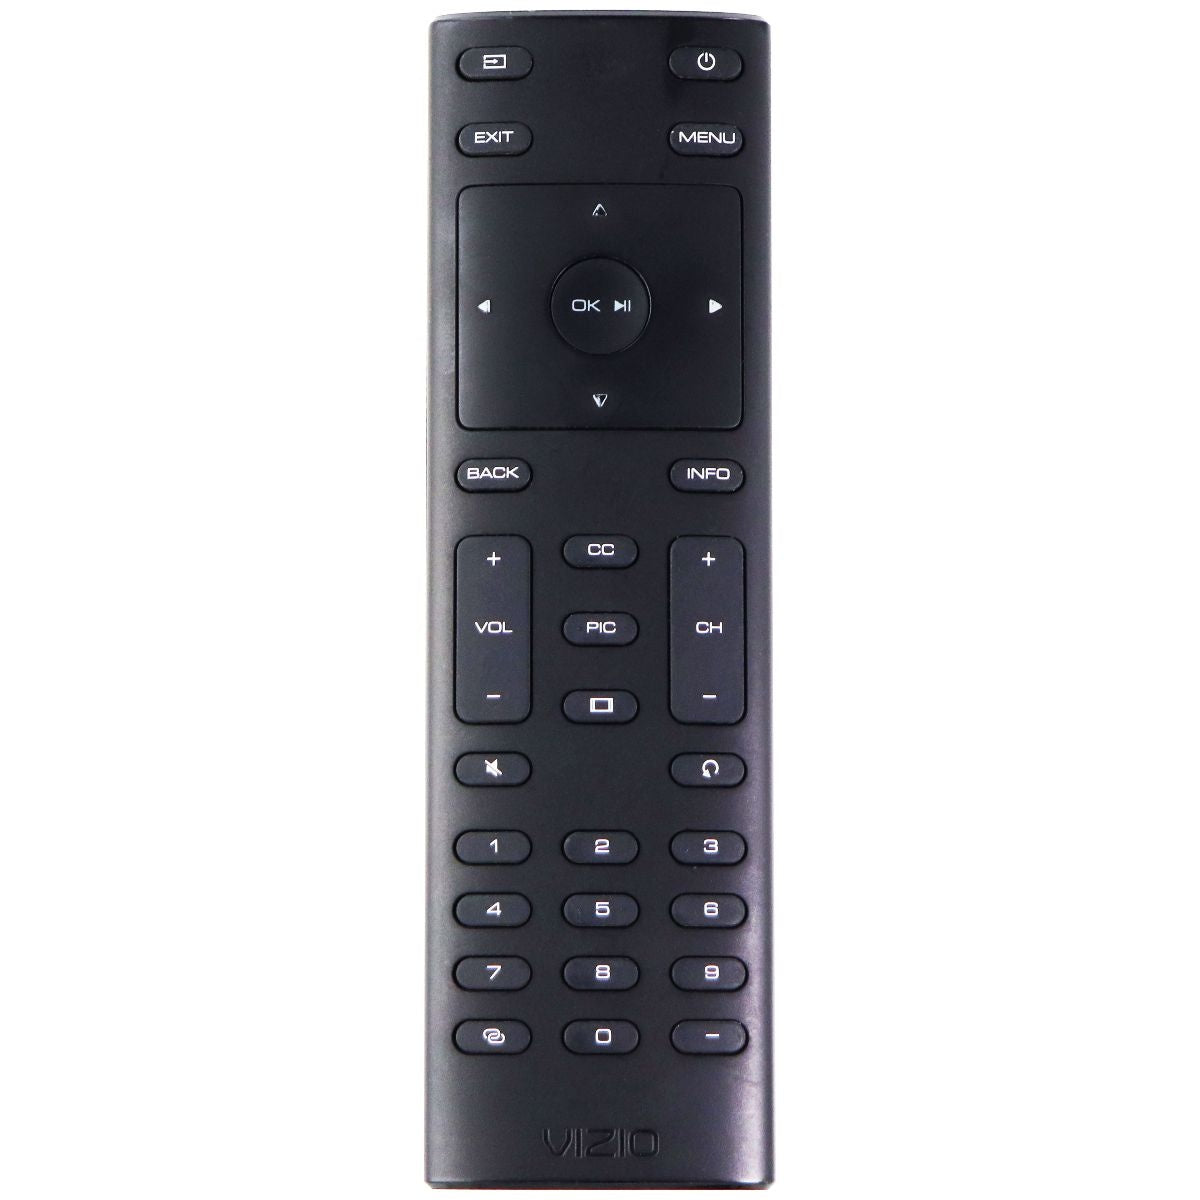 Vizio Remote Control (XRT135) for Select Vizio TVs - Black TV, Video & Audio Accessories - Remote Controls Vizio    - Simple Cell Bulk Wholesale Pricing - USA Seller